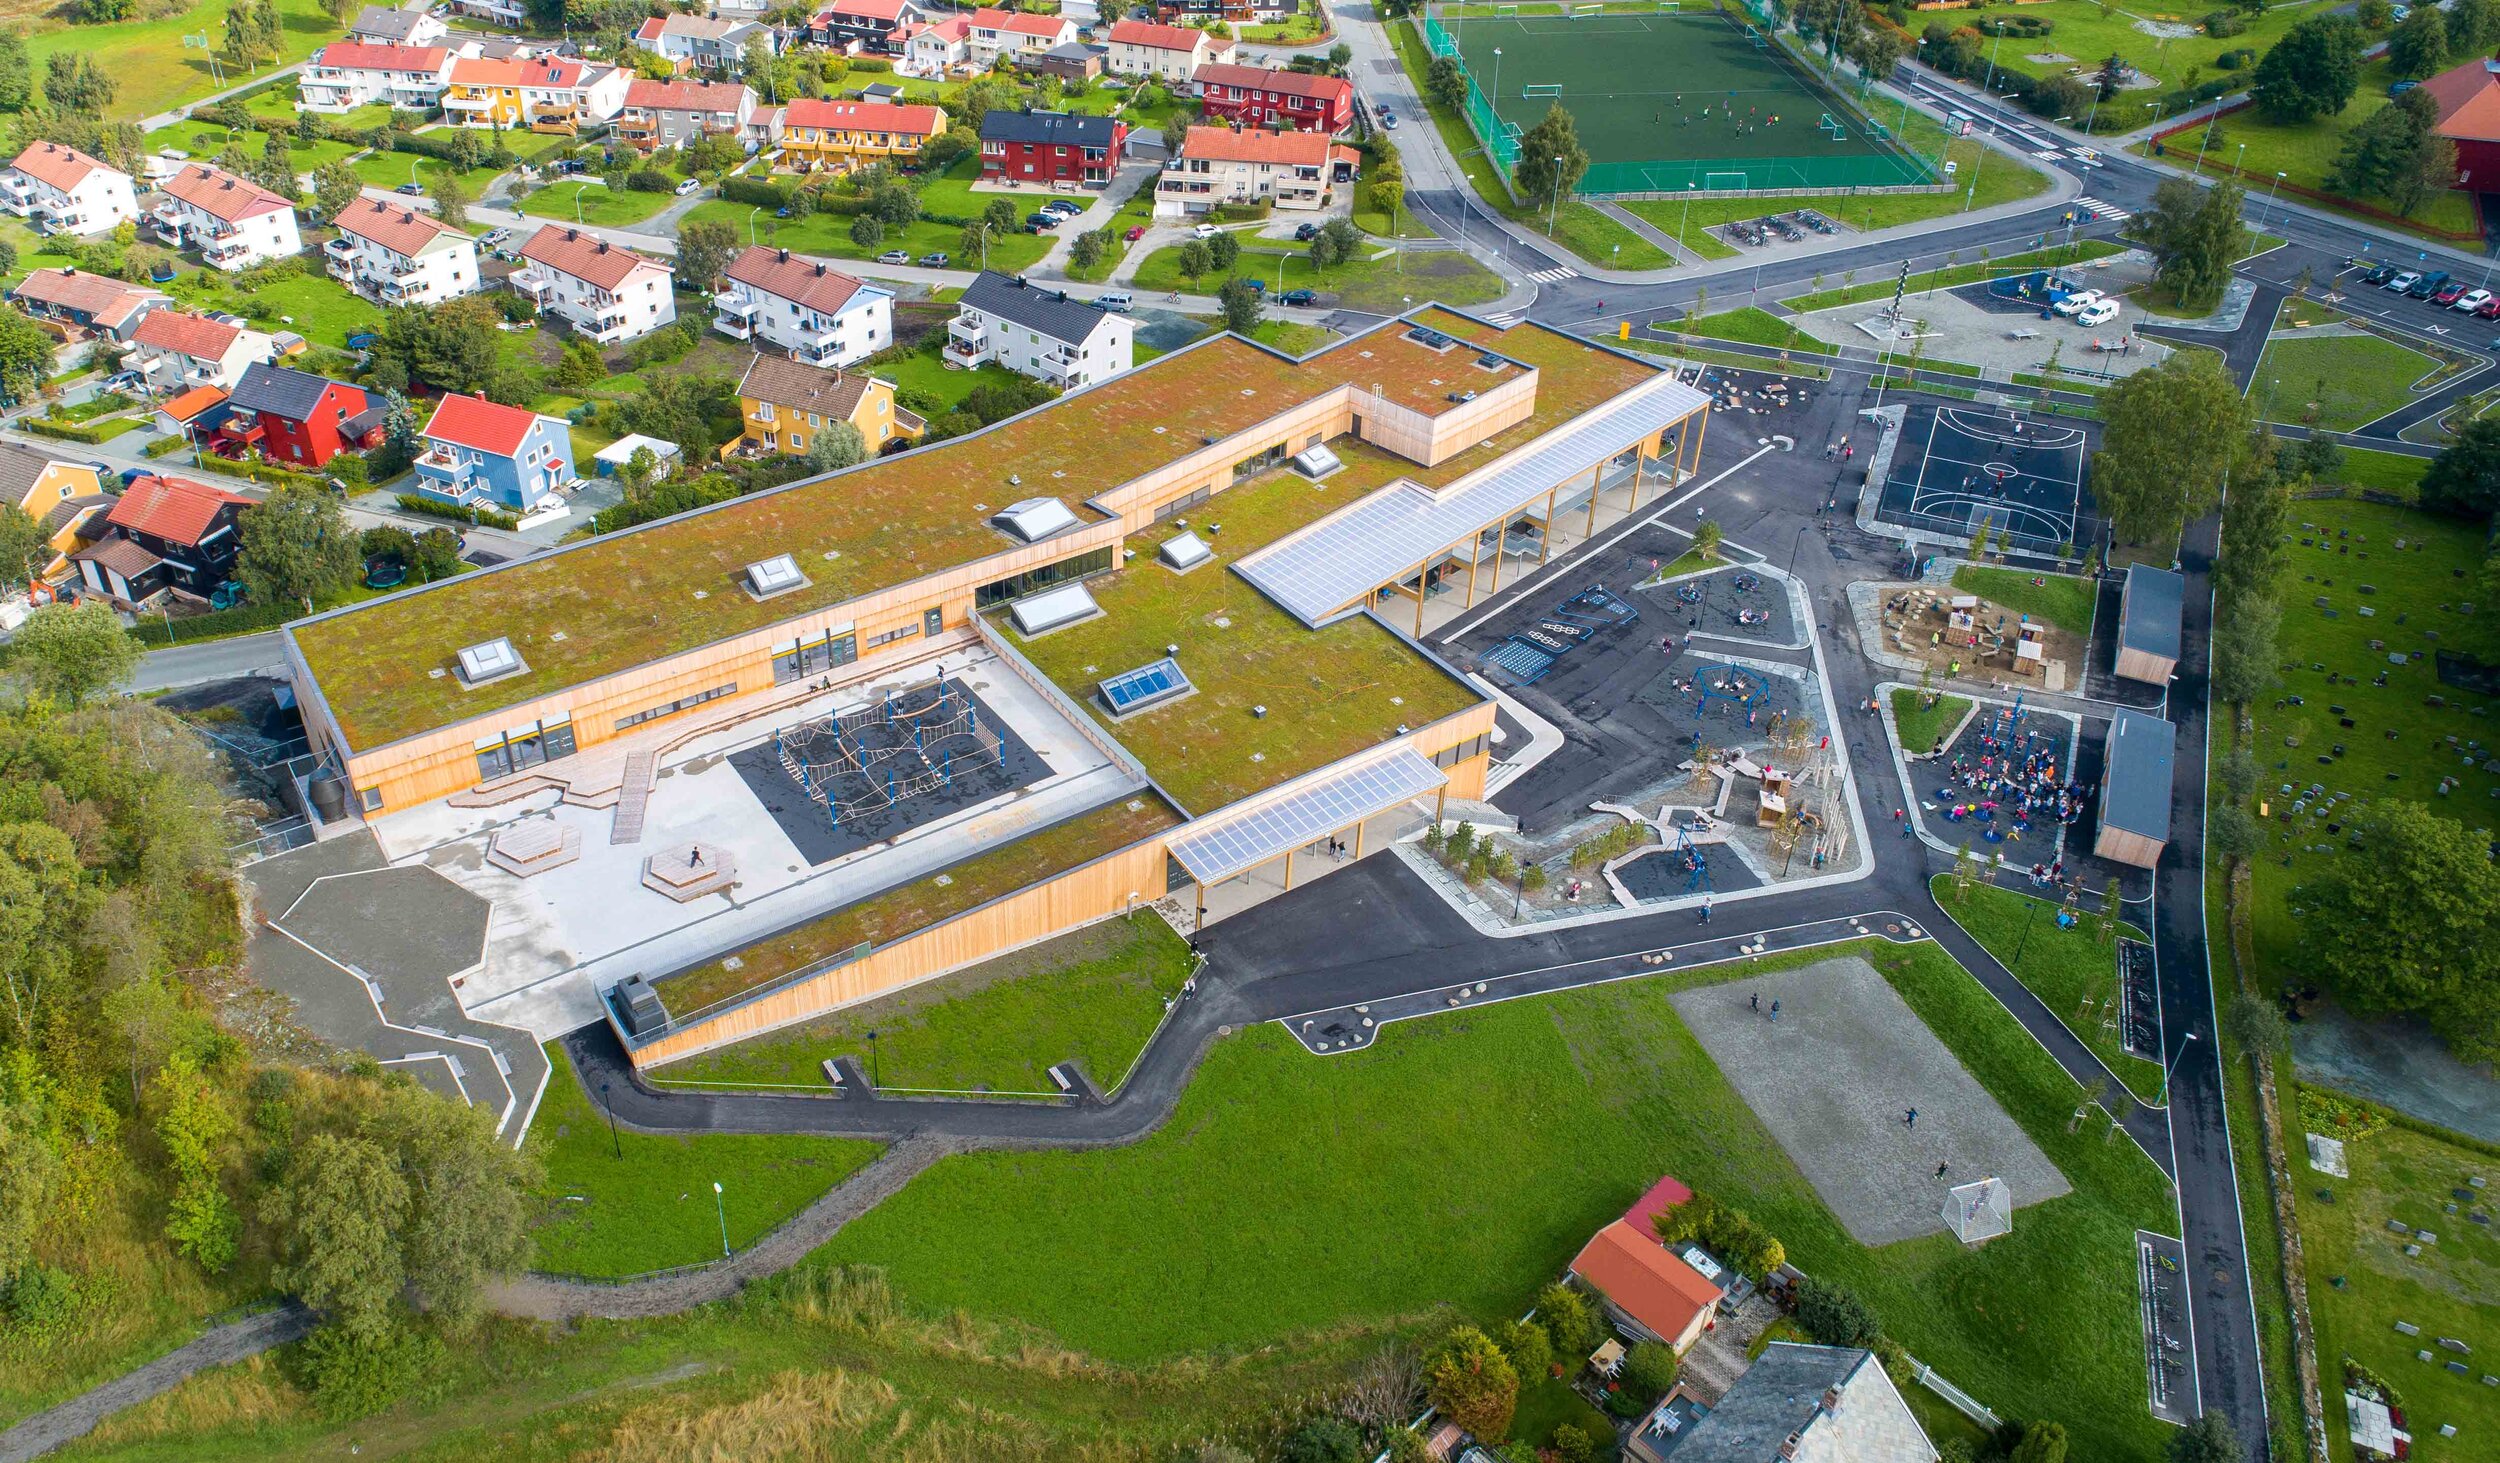 Lade skole, Trondheim — Bergknapp - Sedum og grønne løsninger